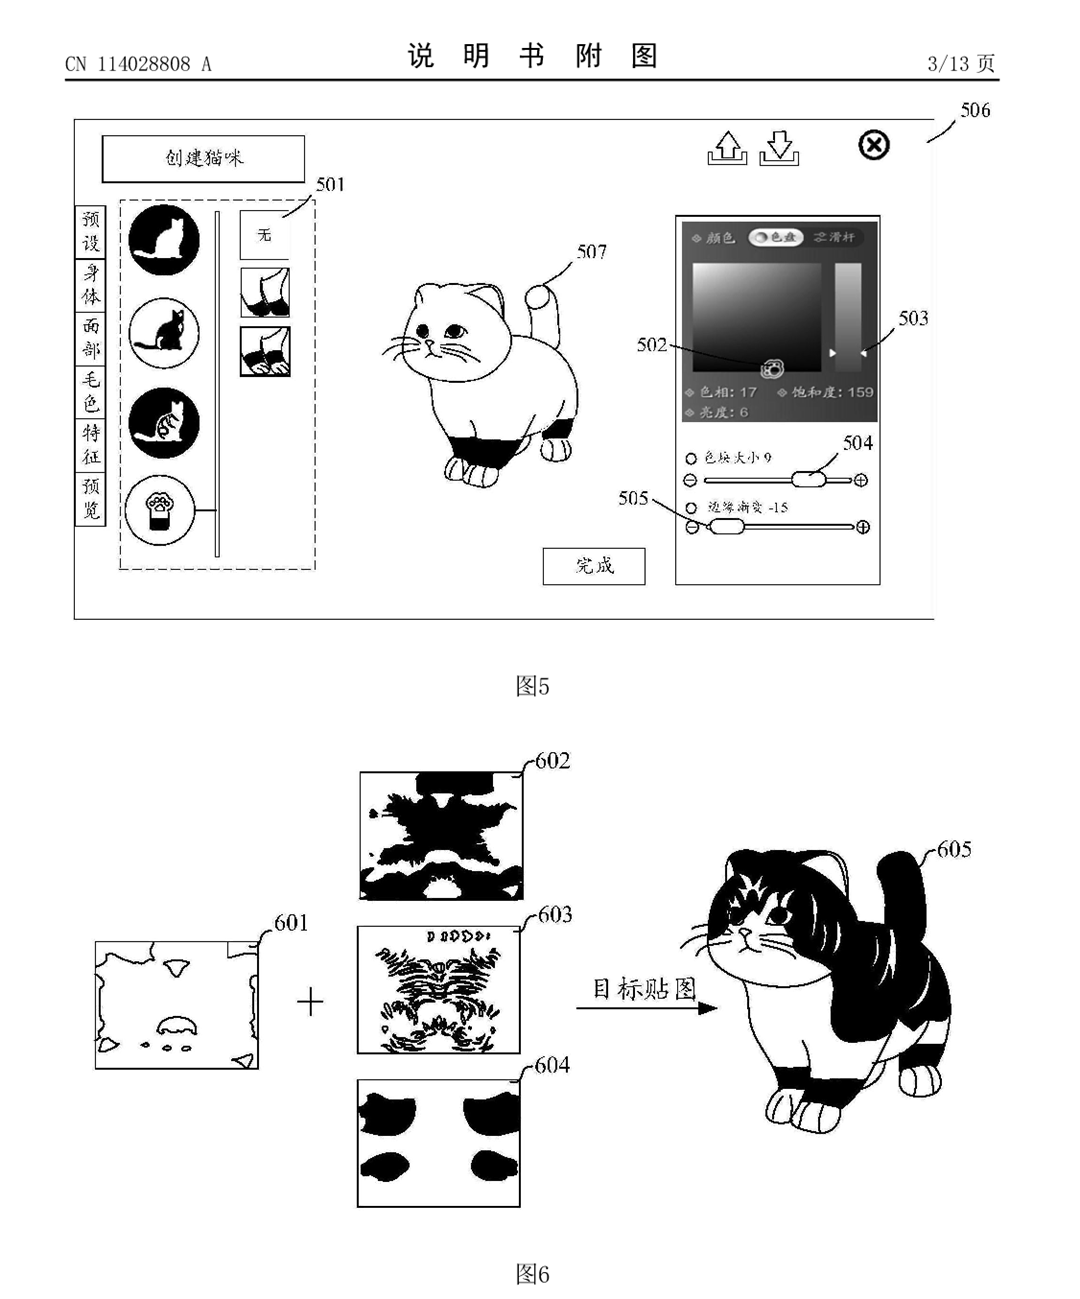 涉人机交互领域，腾讯虚拟宠物外观编辑专利公布